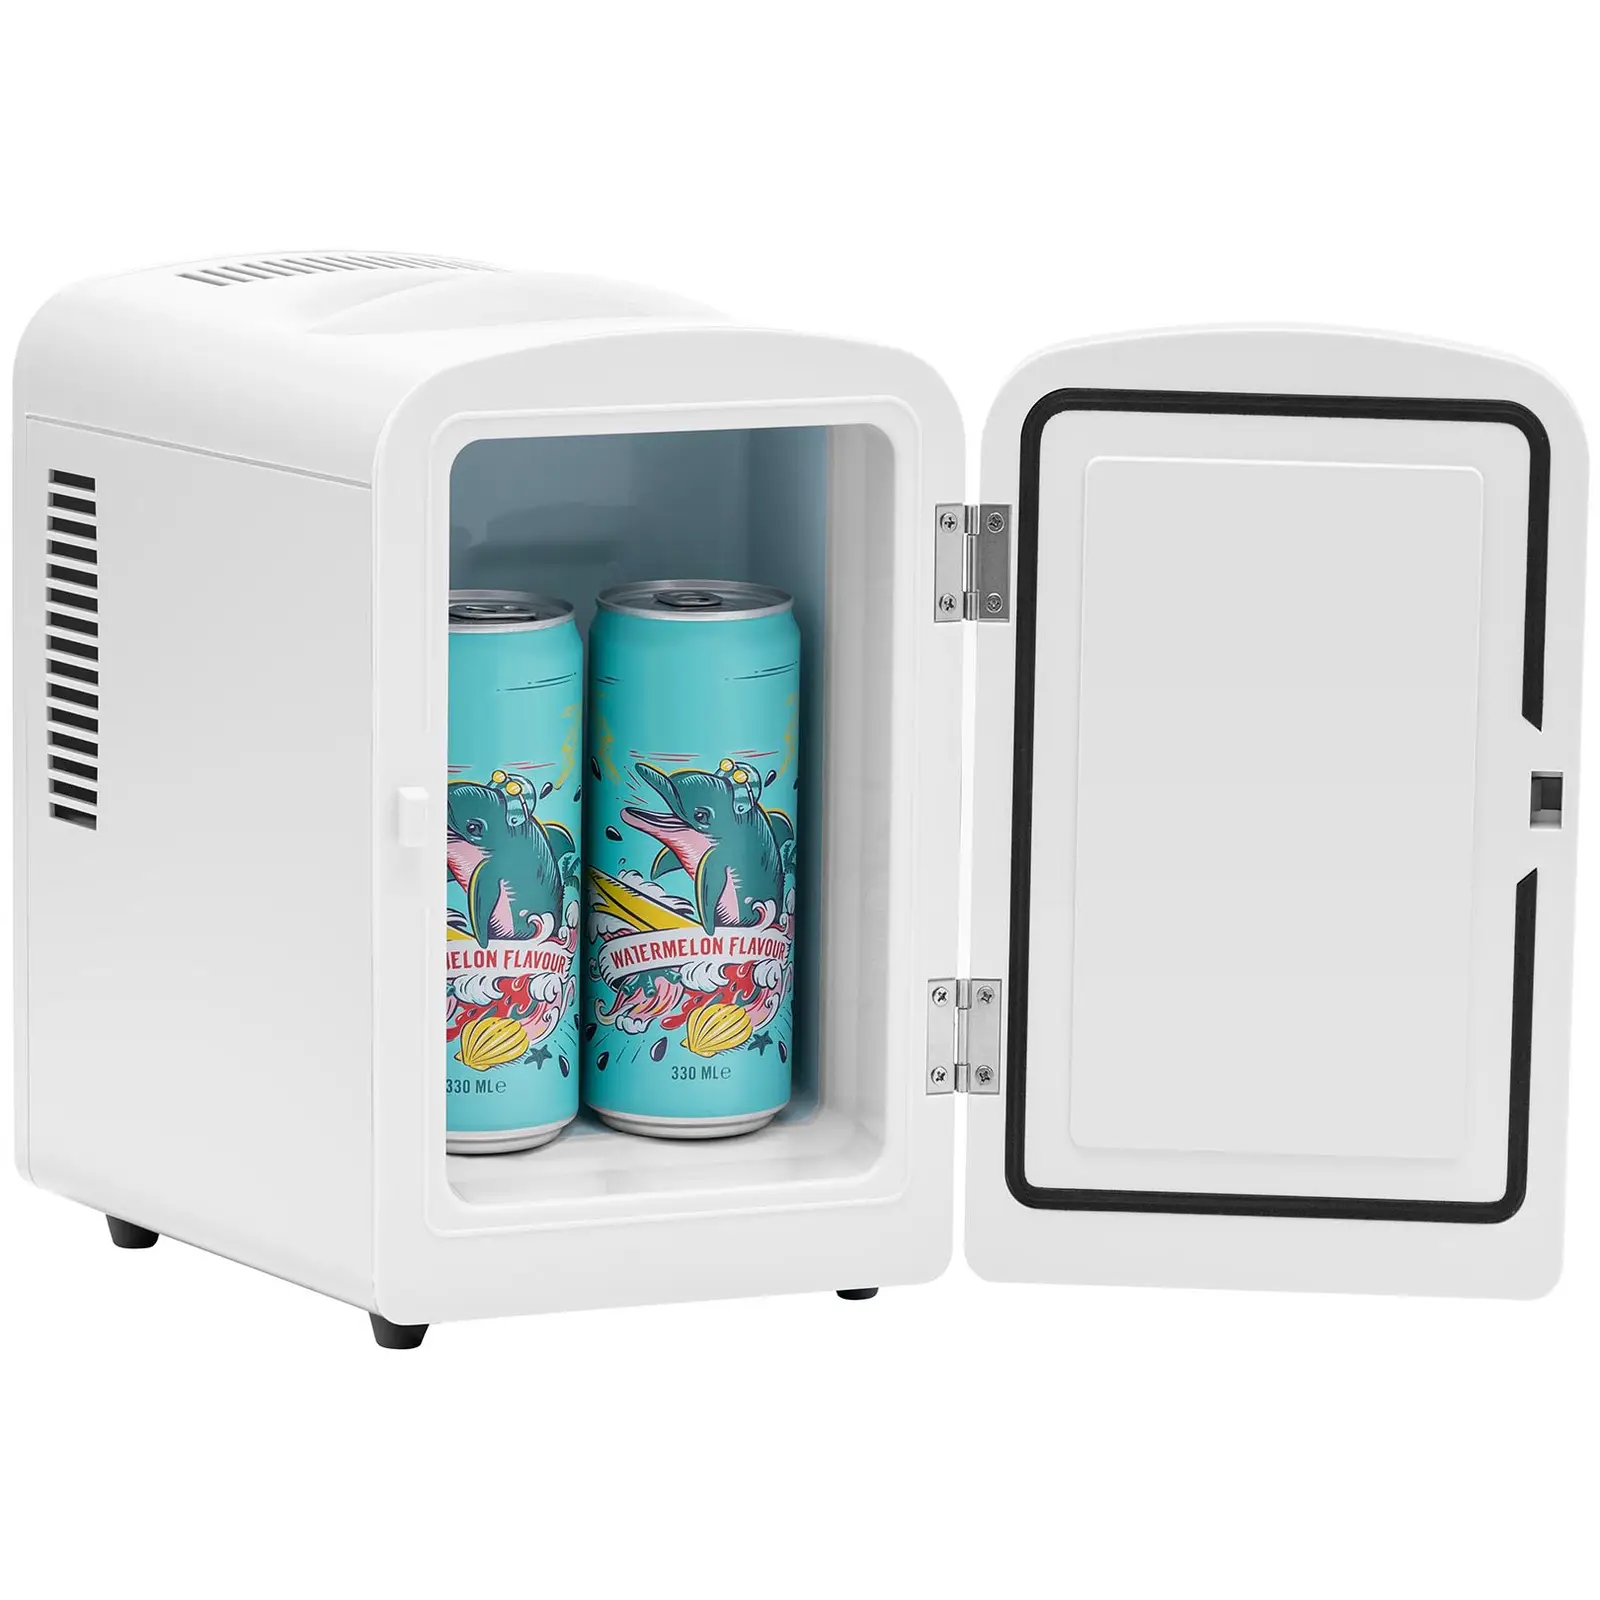 Minikjøleskap 12 V / 230 V - 2-i-1 apparat med holde-varm funksjon - 4 L - Hvit